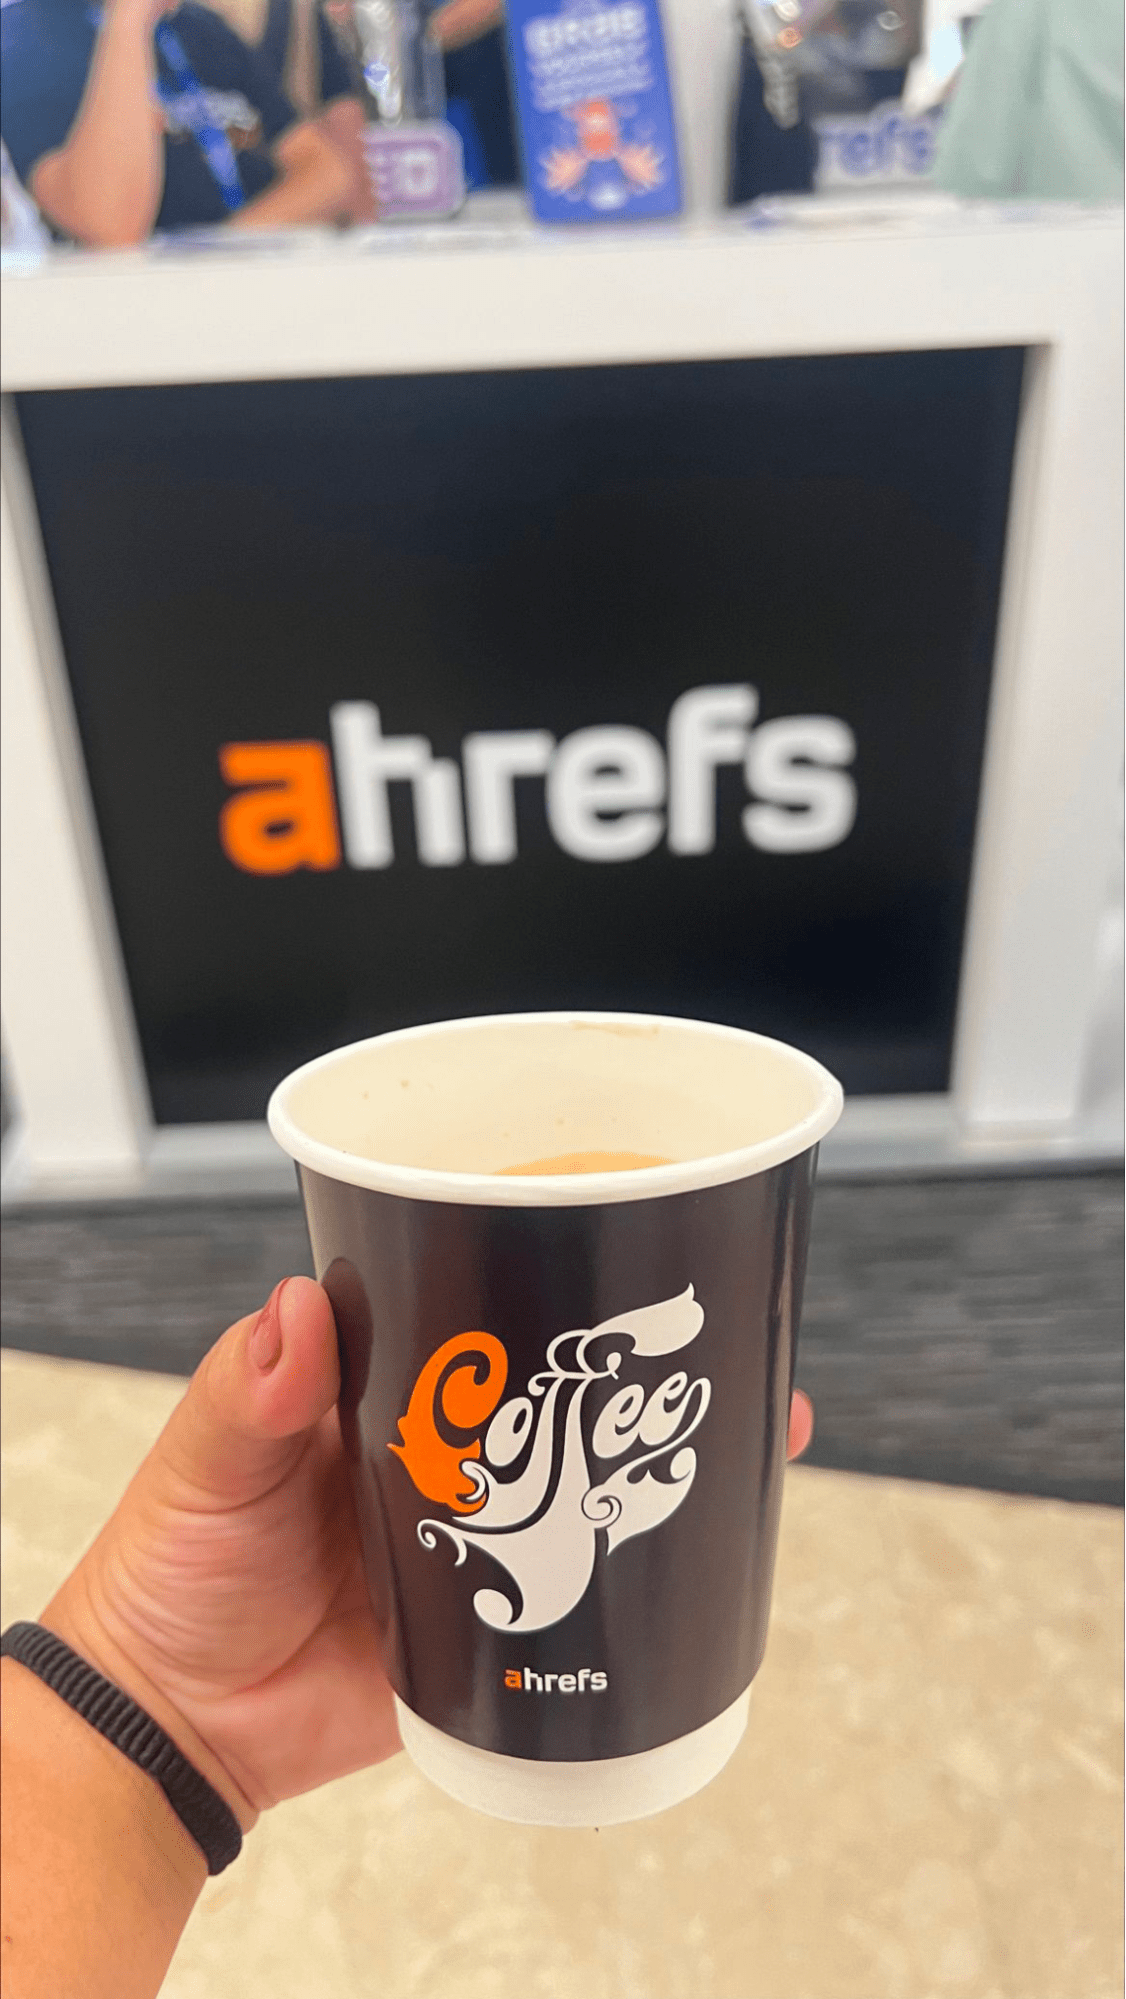 Het koffiekopje van Ahrefs